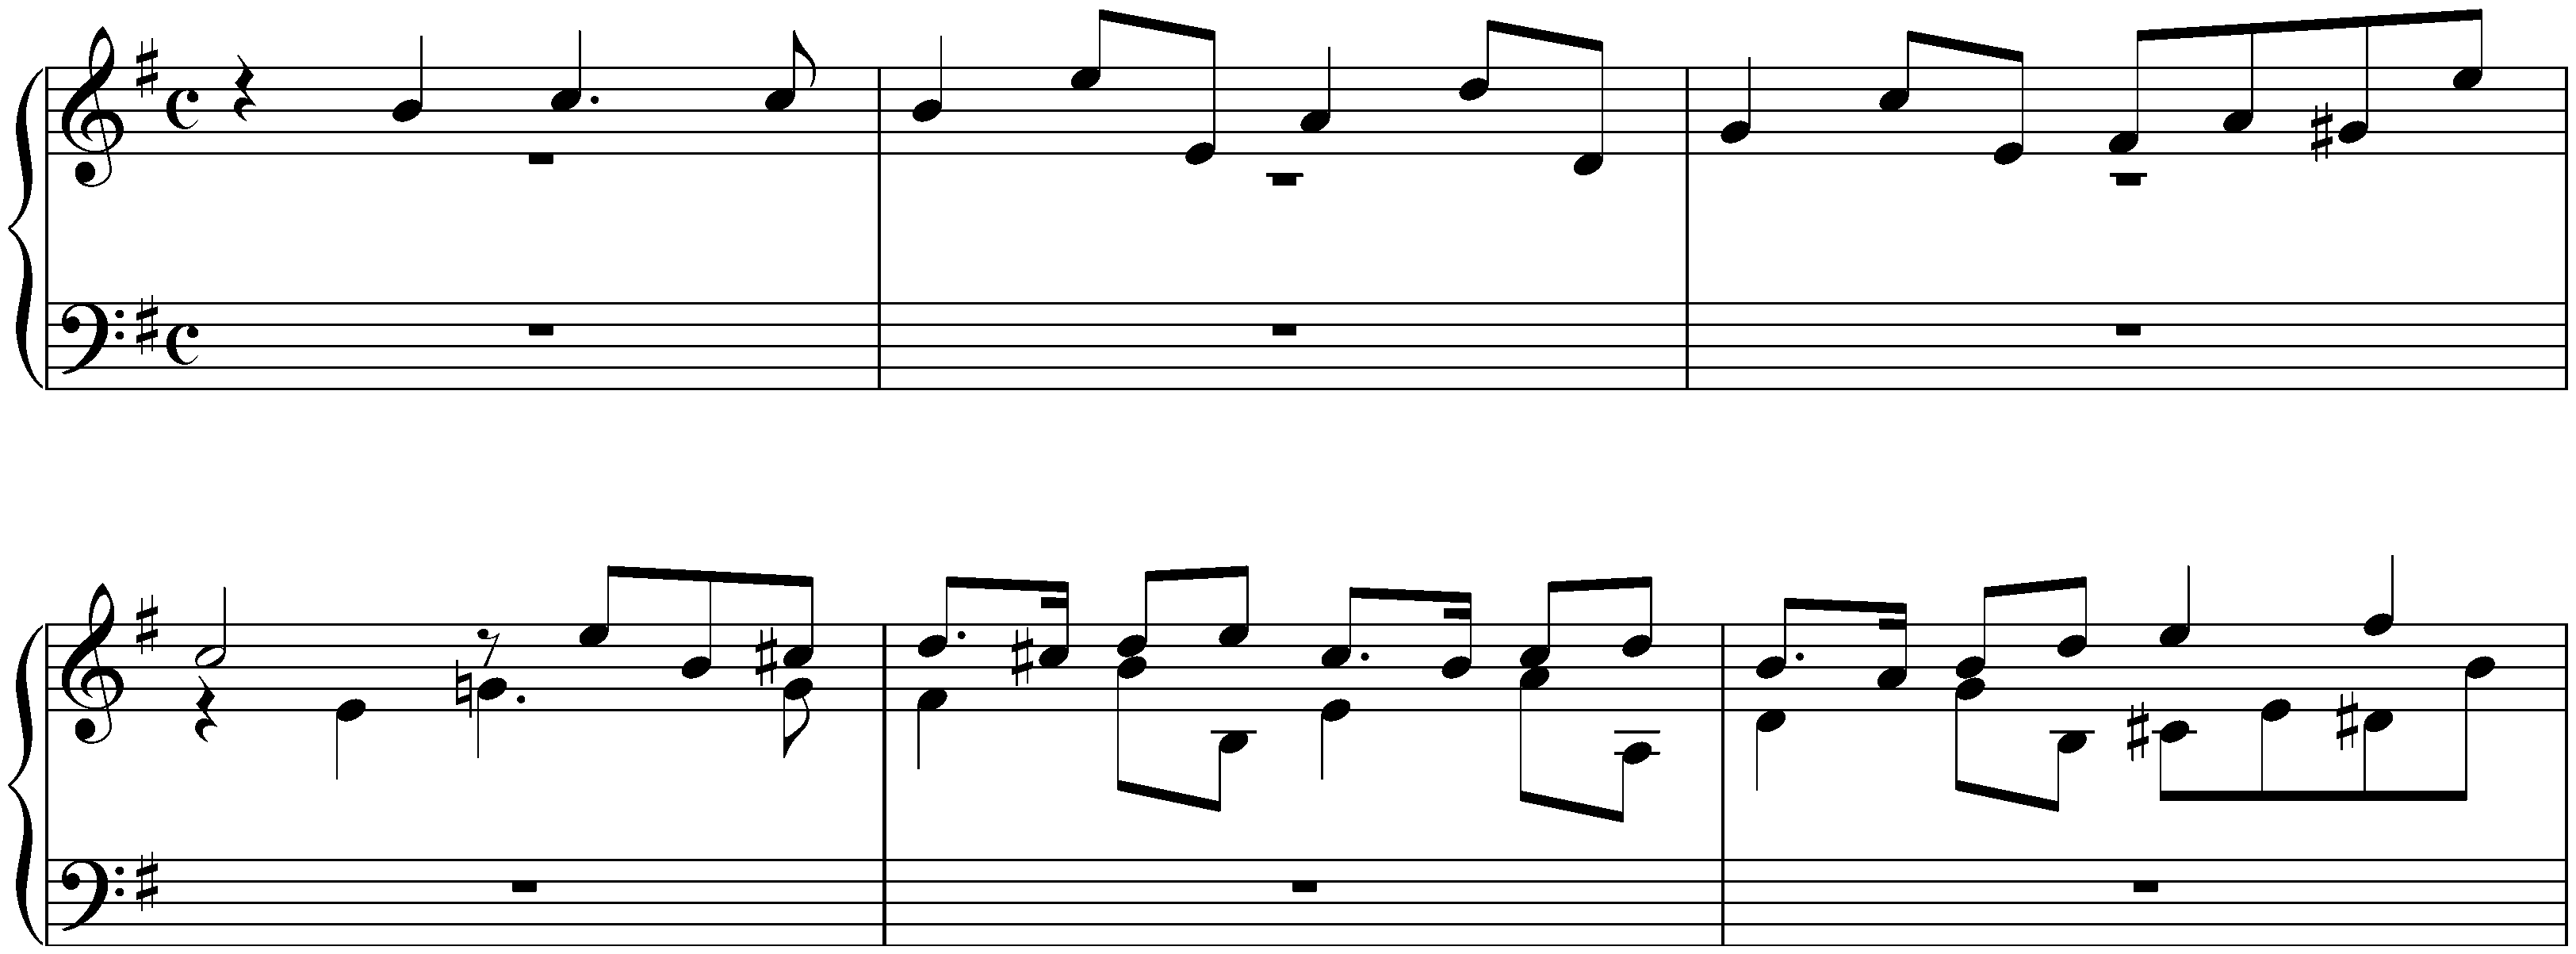 Fugue in E minor, BWV 945